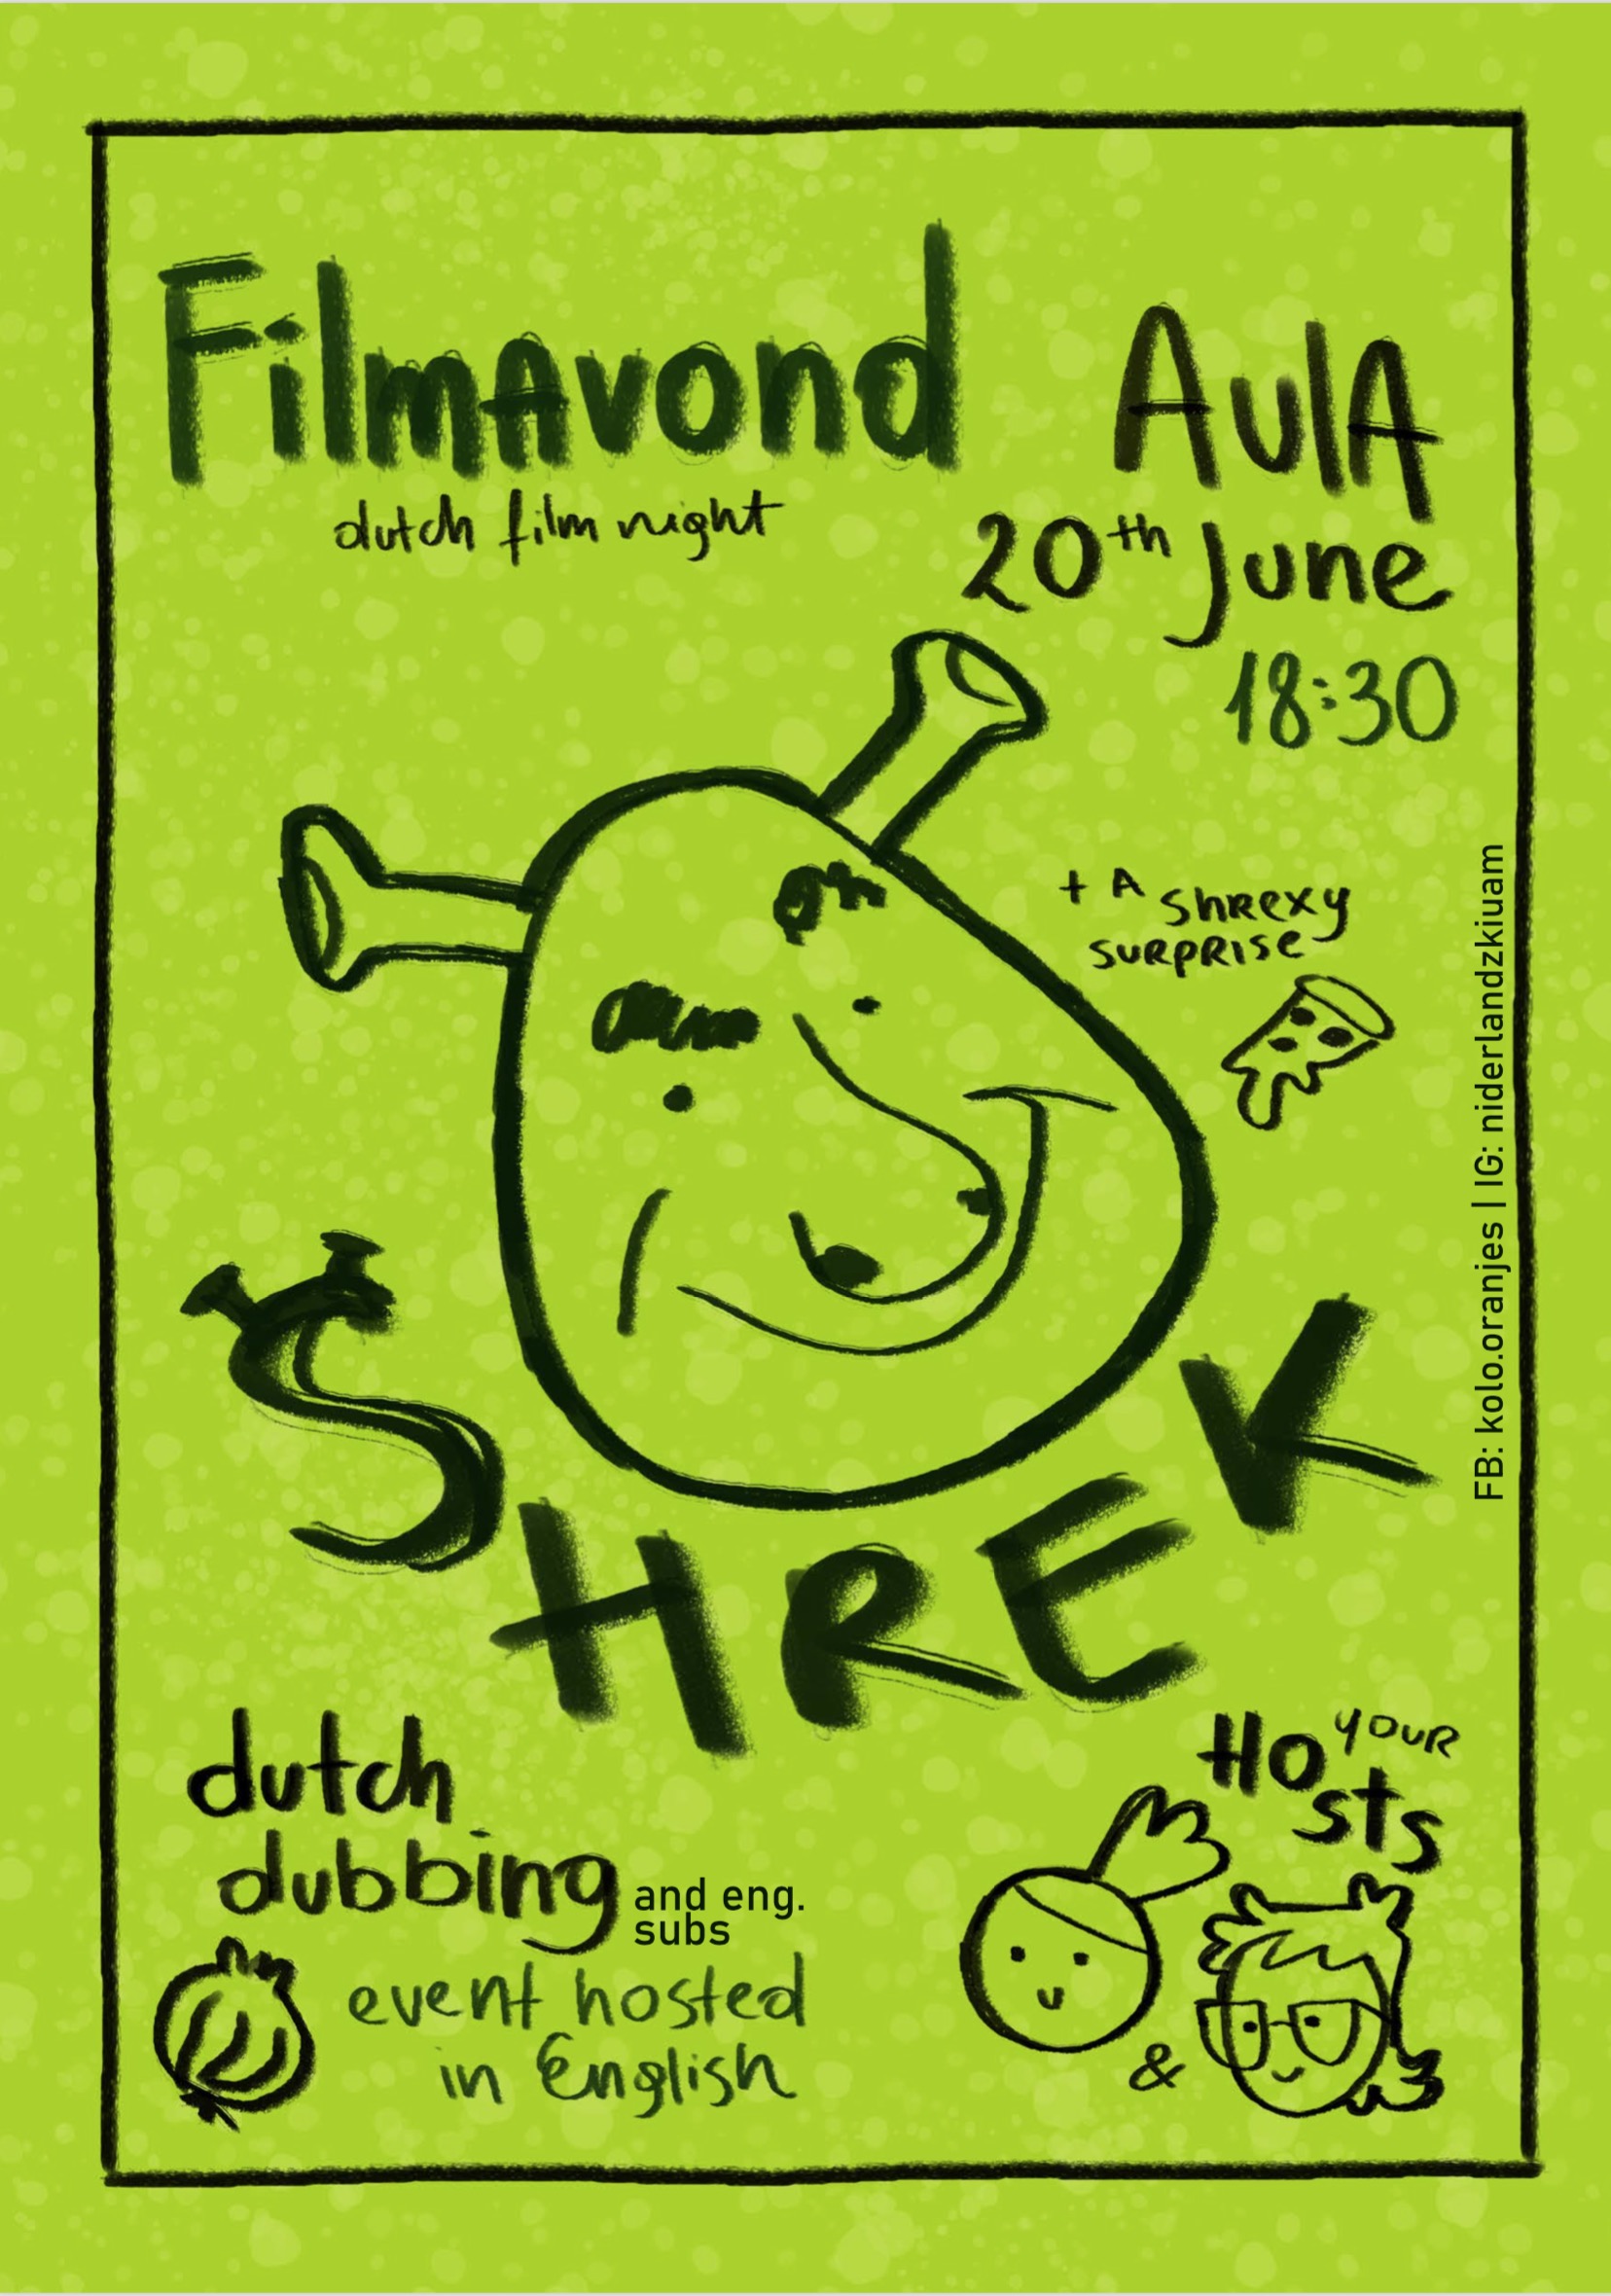 plakat promocyjny: wizerunek postaci Shreka i detale wydarzenia w postaci tekstowej